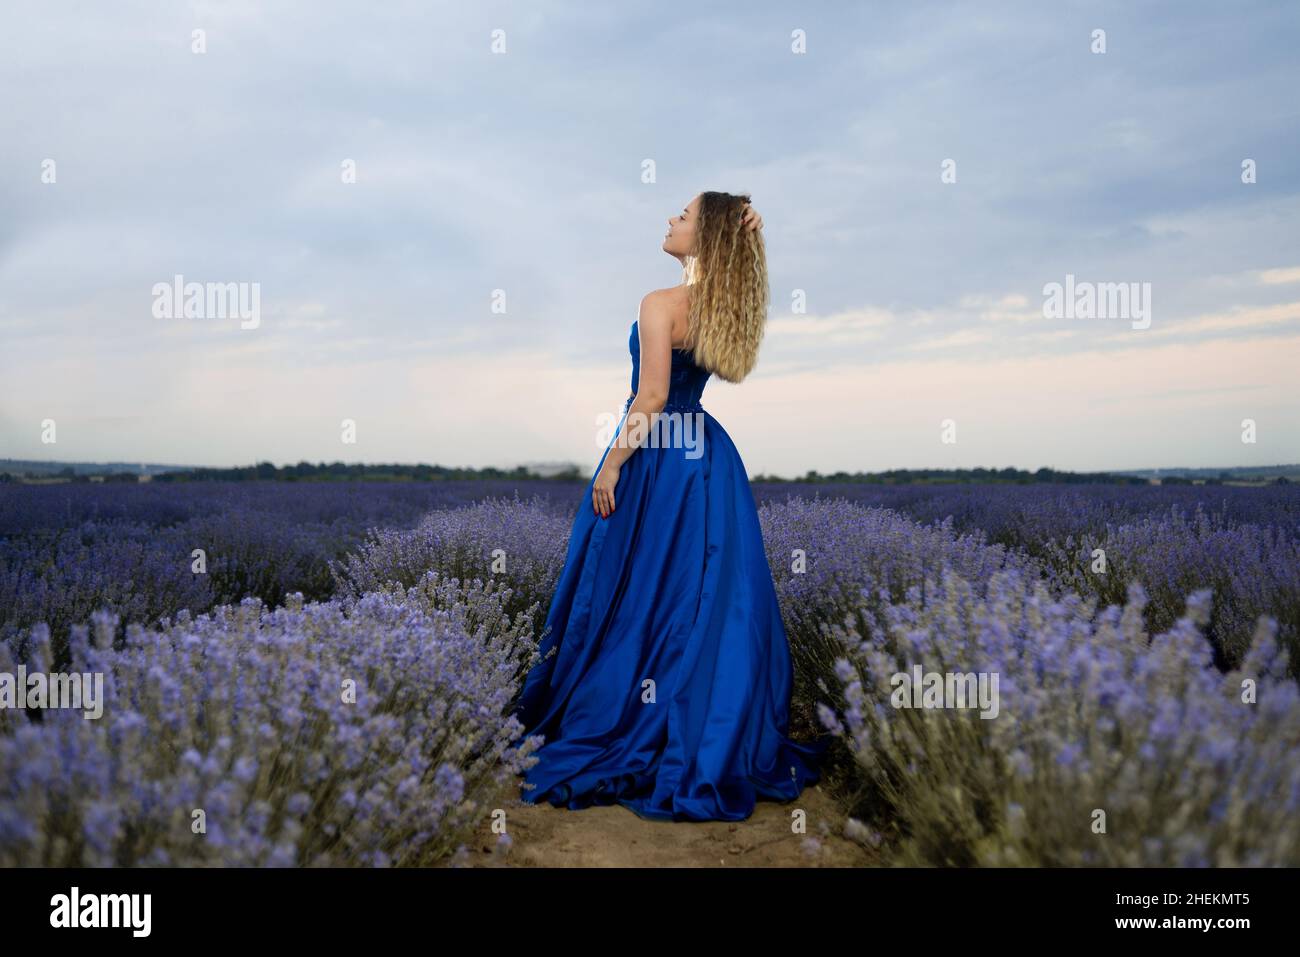 Mädchen Tourist in einem langen blauen Kleid auf einem Lavendelfeld zwischen blühenden duftenden Blumen. Natur und Aromatherapie im Sommer. Weibliches Model in einem langen Kleid Stockfoto